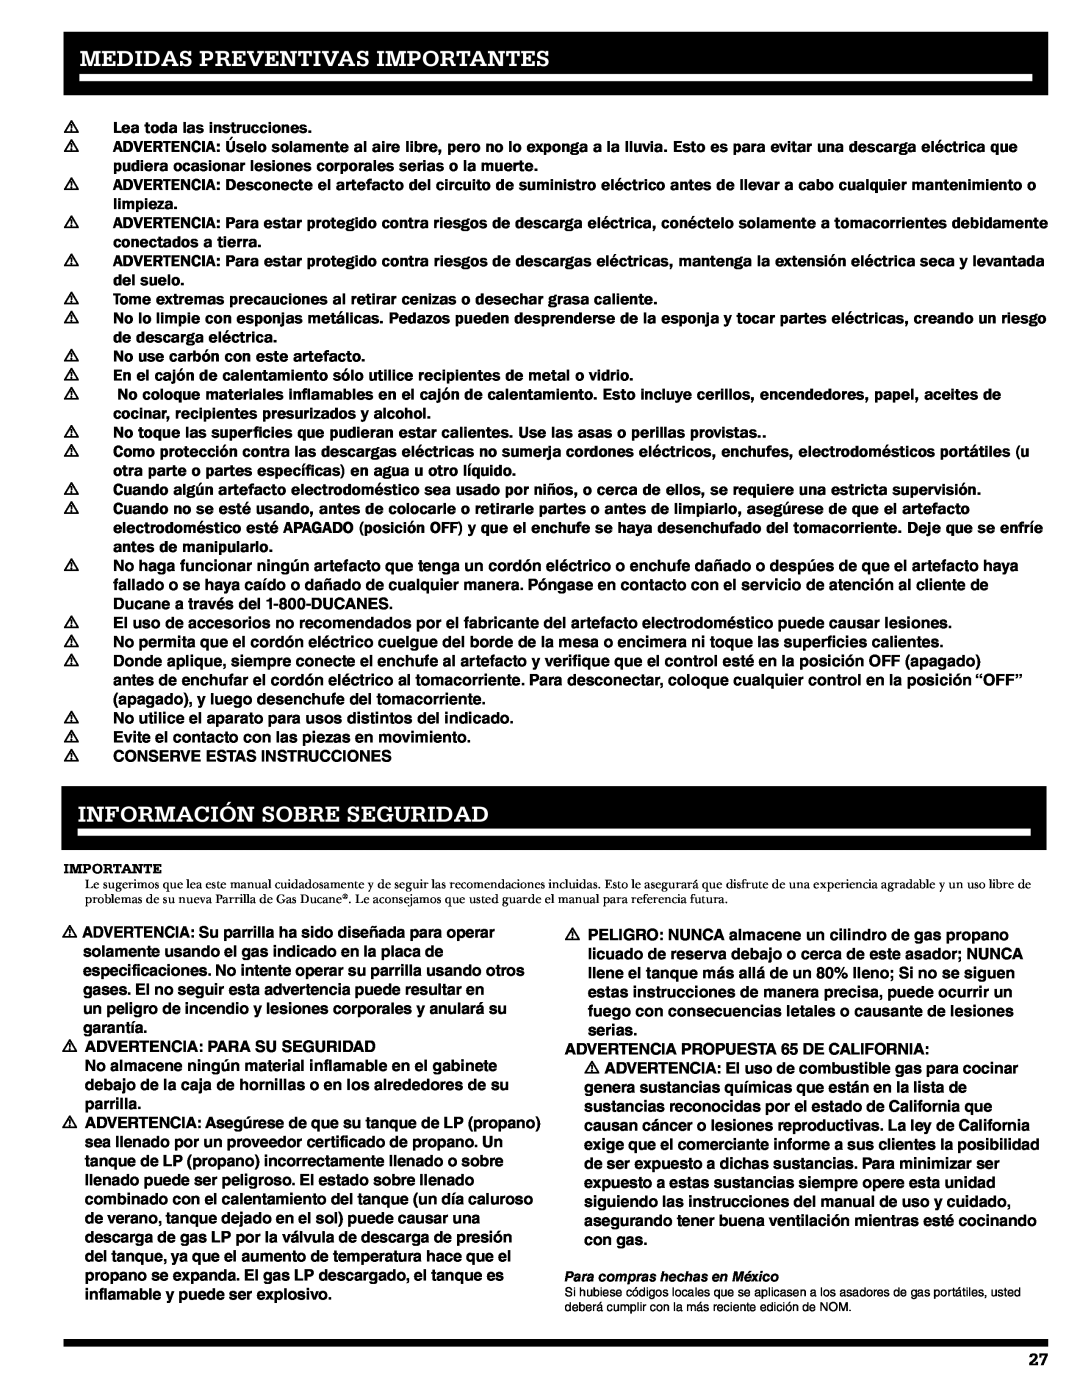 Ducane 2020805 owner manual Medidas Preventivas Importantes, Información Sobre Seguridad 